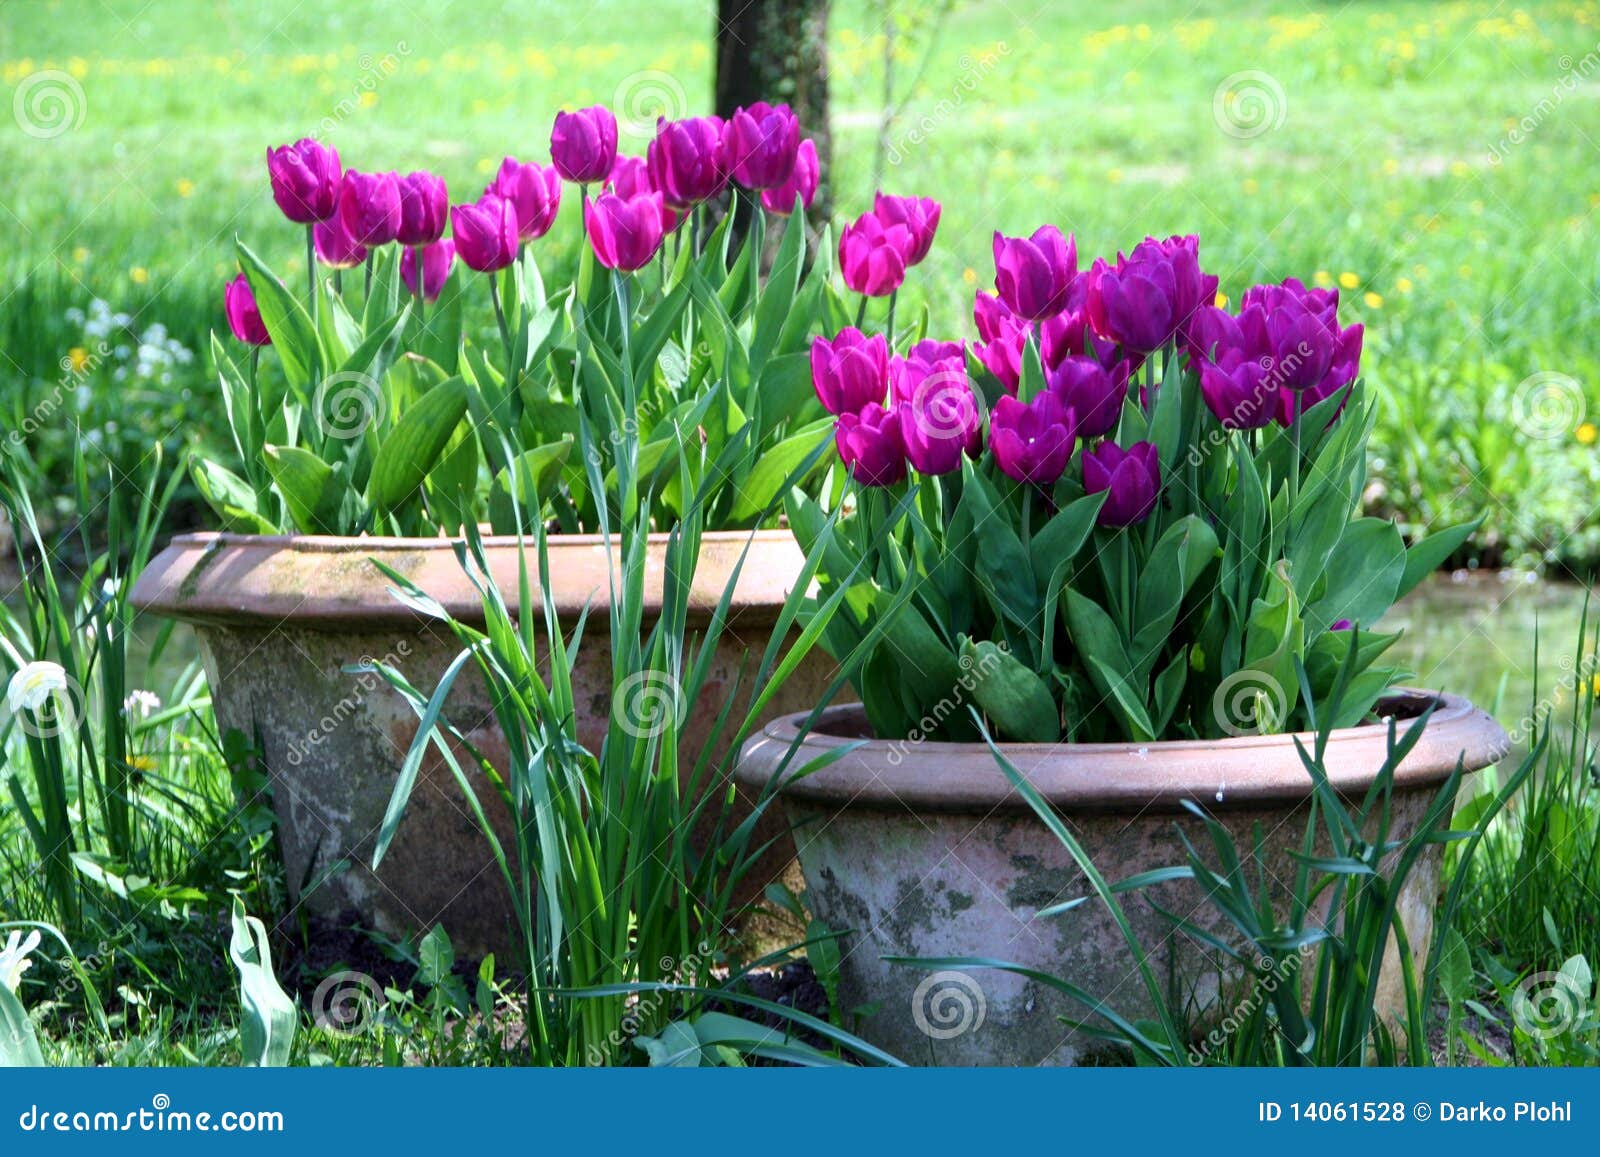 tulips in the ceramics pot